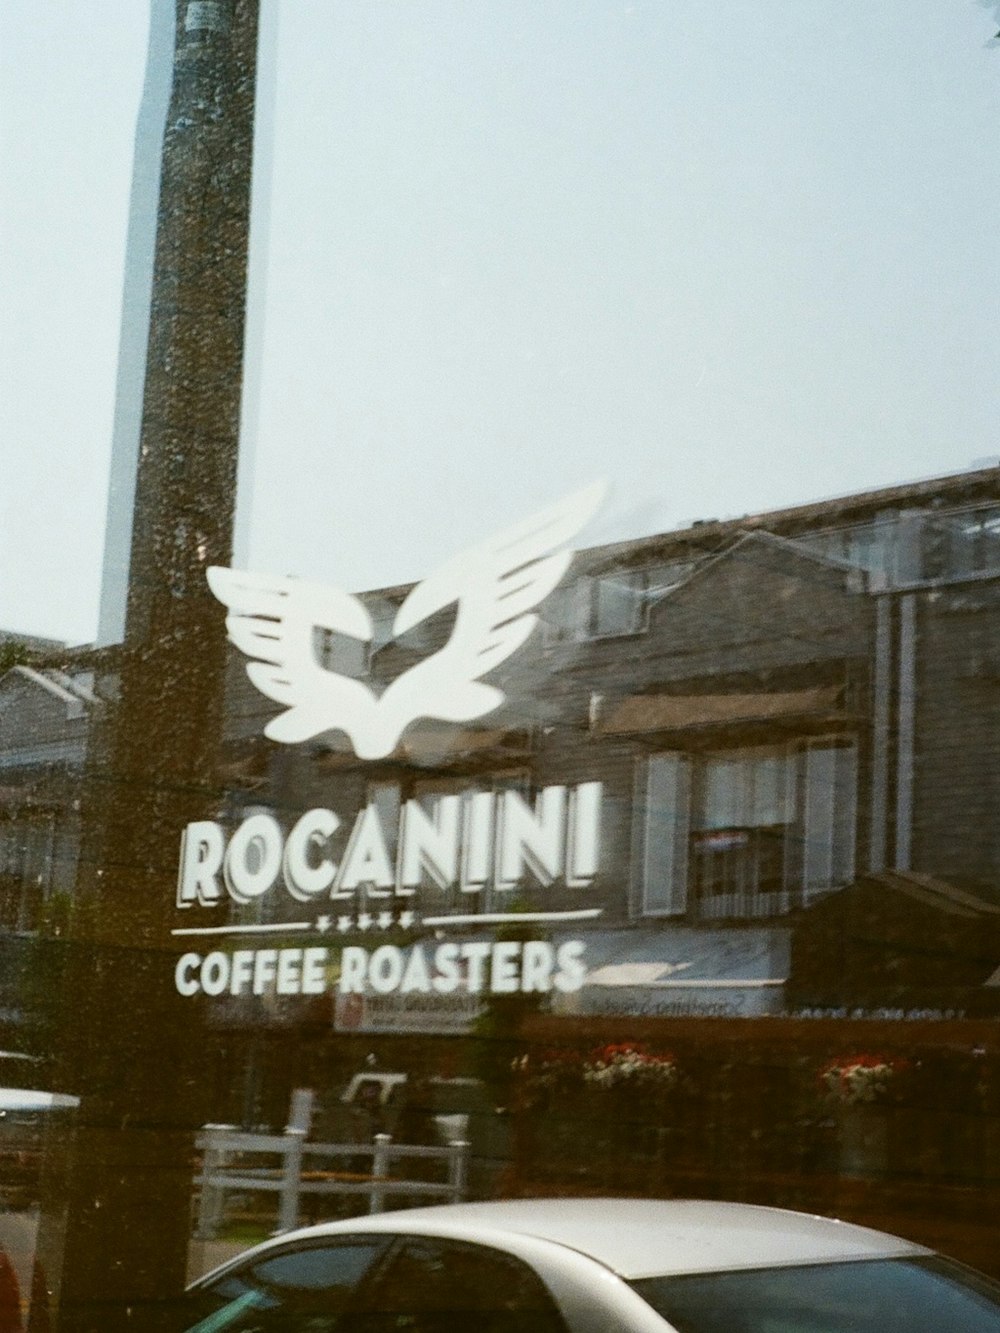 Un bâtiment avec une enseigne qui dit roganni coffee roasters